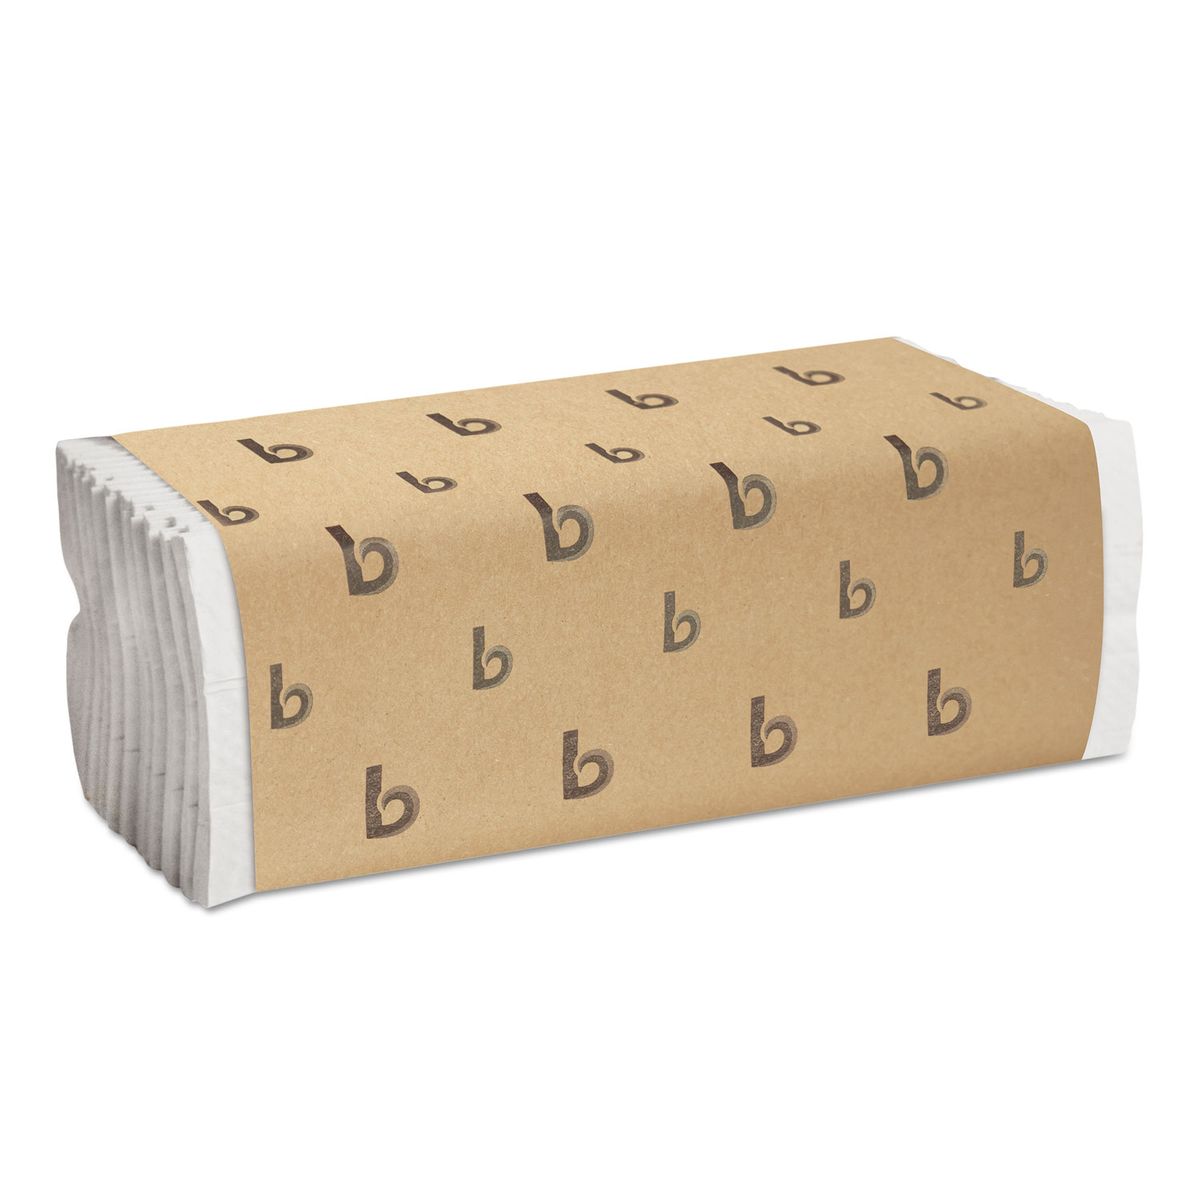 楽天Walmart 楽天市場店[RDY] [送料無料] Boardwalk Cフォールド ブリーチドホワイト ペーパータオル 200枚入り 12 ct [楽天海外通販] | Boardwalk C-Fold Bleached White Paper Towels, 200 sheets, 12 ct